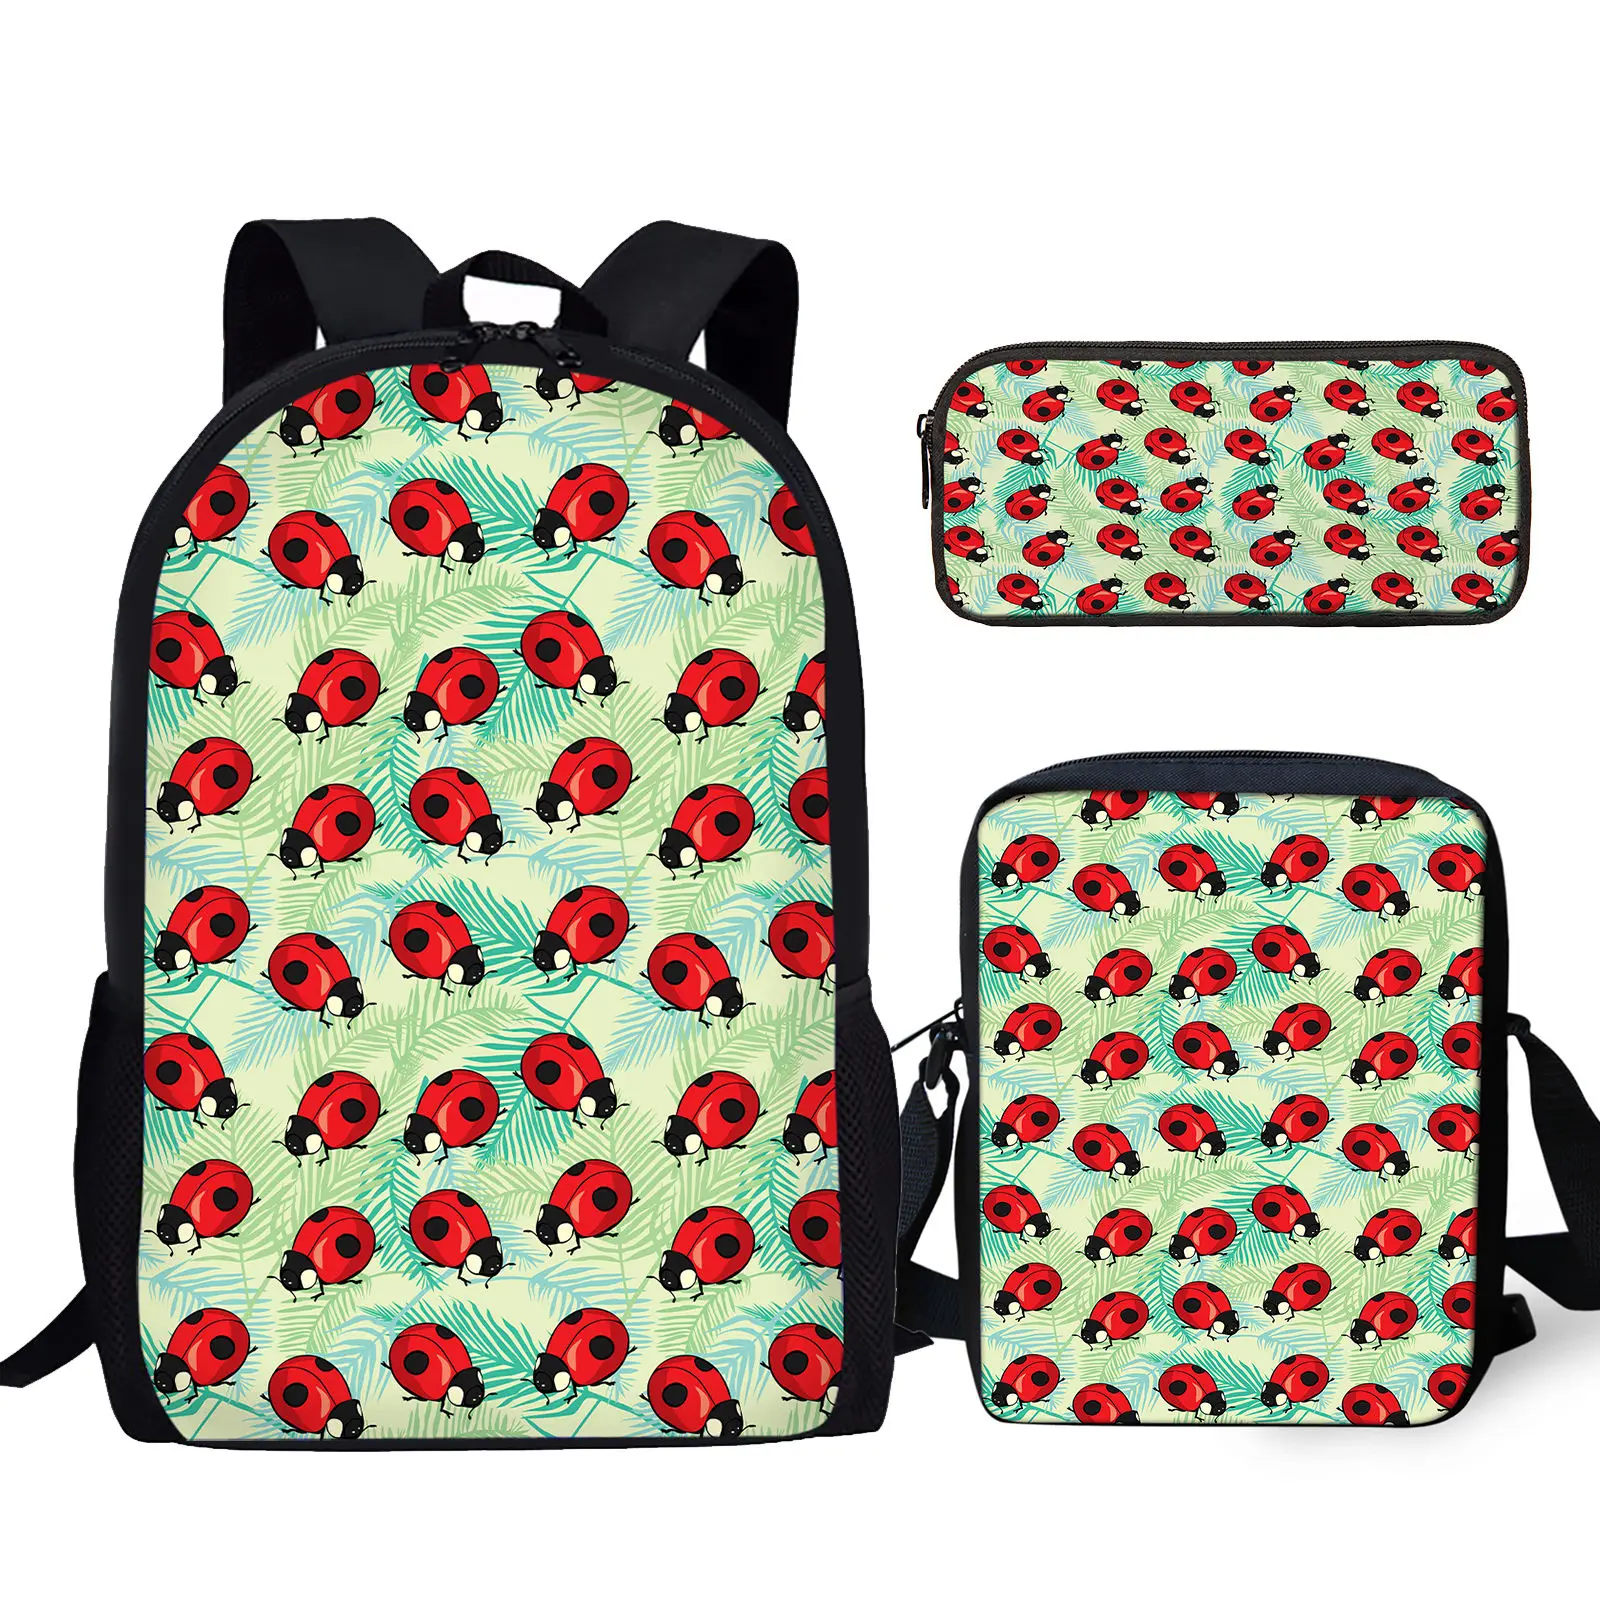 

YIKELUO 3D Cartoon Seven Star Ladybug Plant Print Brand Backpack Comfortable Adjustable Shoulder Strap Messenger Bag Pencil Case